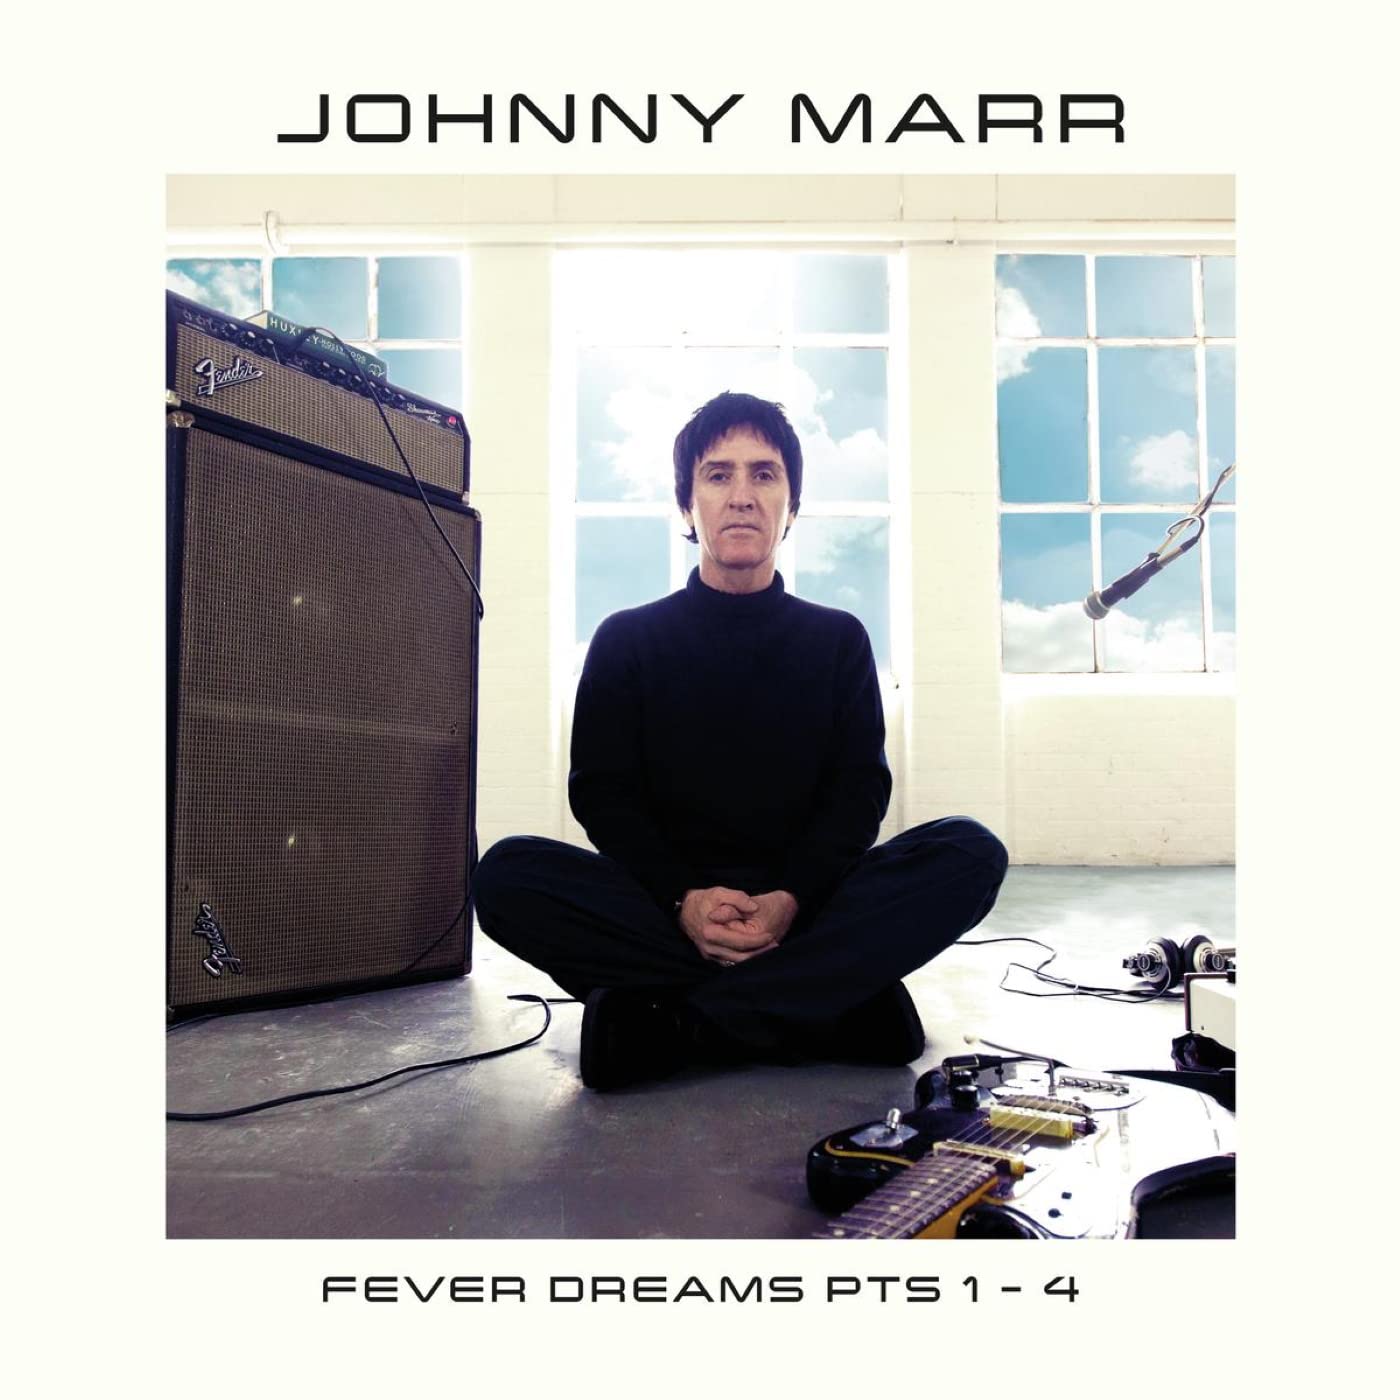 Johnny Marr - Fever Dreams Pts. 1-4 2LP